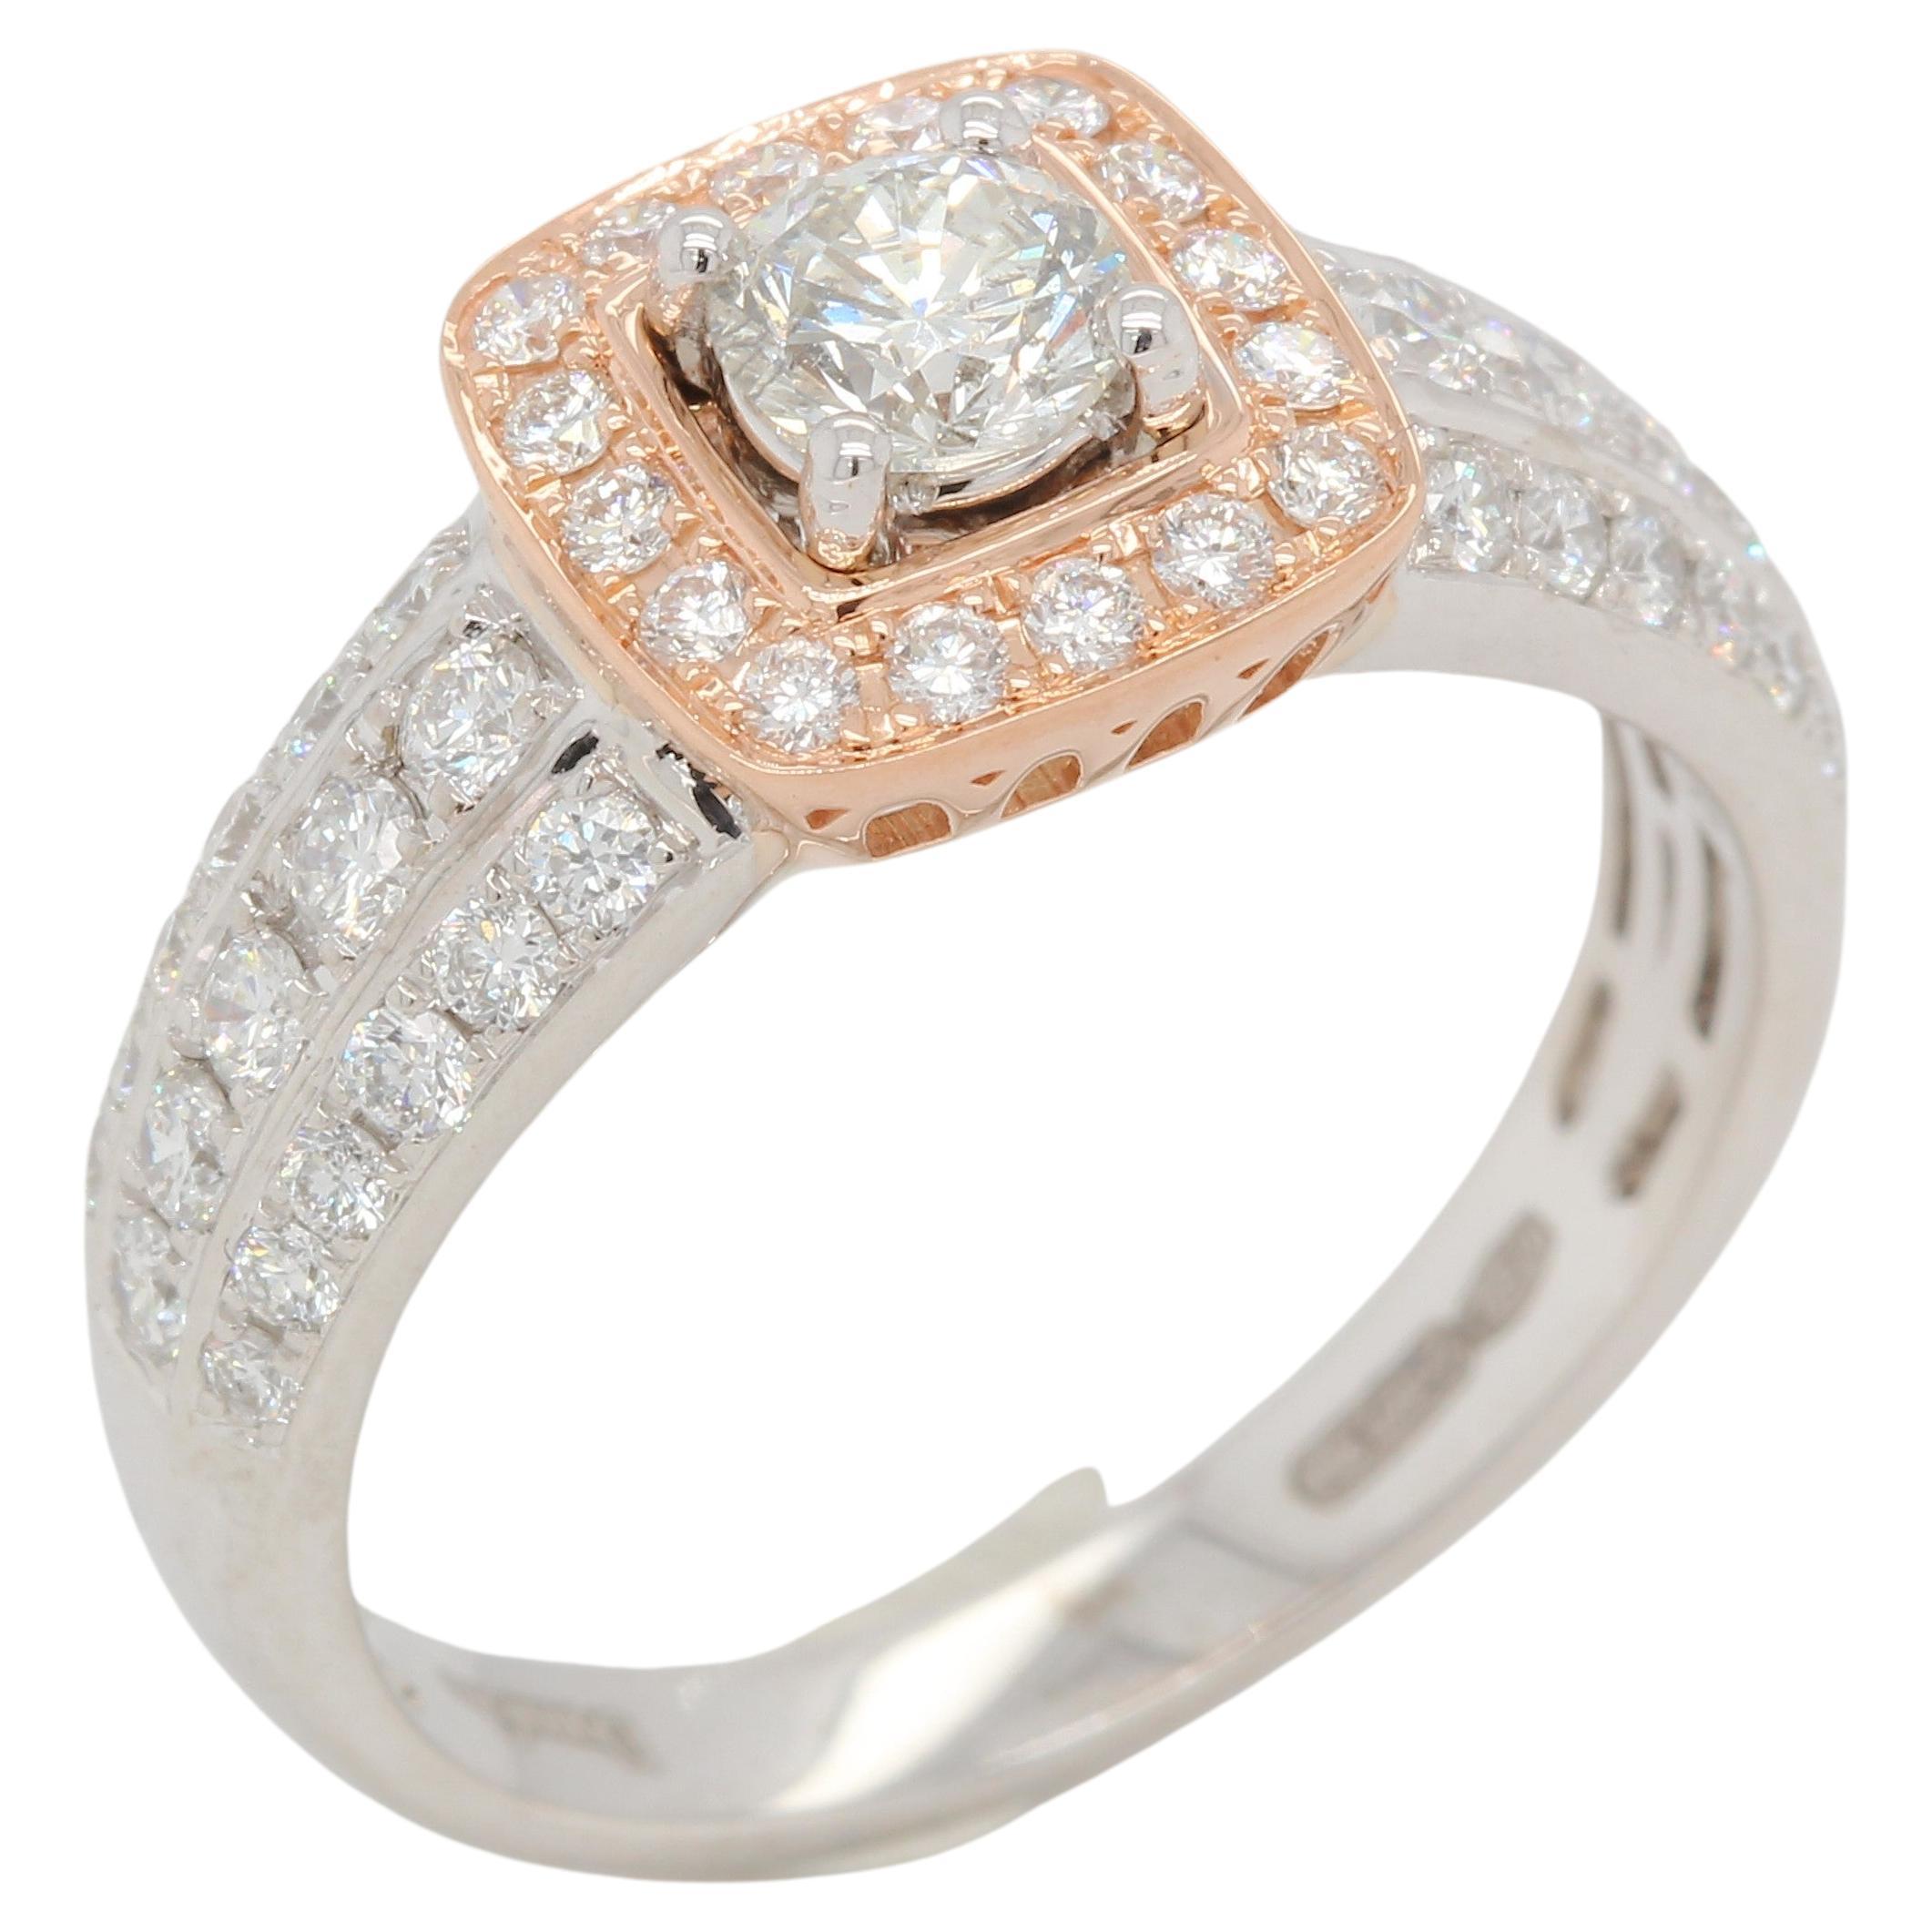 1.05 Carat Diamond Wedding Ring in 18 Karat Gold For Sale